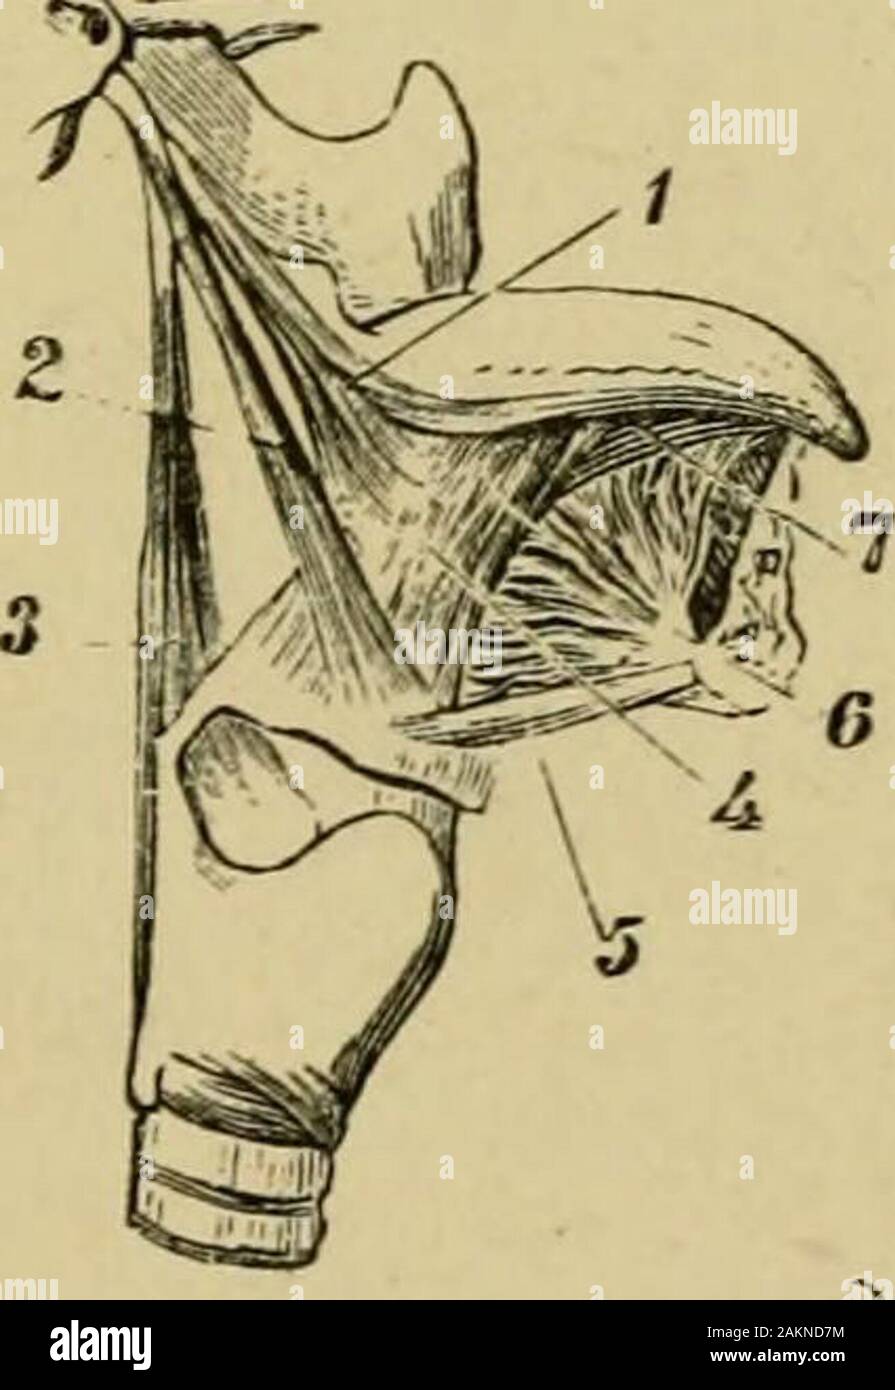 Der grasfrosch. Abb. 64.- Diagramm der kaudalen Muskulatur der rechten Seite oder Schwanz von Iguana, showinghow der ventralen Masse ähnelt der dorsalen teil, und wie die tendinous inter-Abschnitte des Mu besondere Fasern sind in Kegel aufgestellt. N, neuronale Wirbelsäule; 11, hypapophysial Wirbelsäule; z, zygapophysis;/, quer Prozess; i, Dorsalen seriesof Kegel; 2, obere seitliche Reihe von Kegeln; 3, untere Reihe von Kegeln; veuLral seriesof Kegel. Trennmembranen und anschließende bis der Muskelmasse in Super sphtting auferlegten Blätter ofdifferently Gerichtete Fasern. Diese kindschaft zwischen Piscine und mammalianmyology Stockfoto